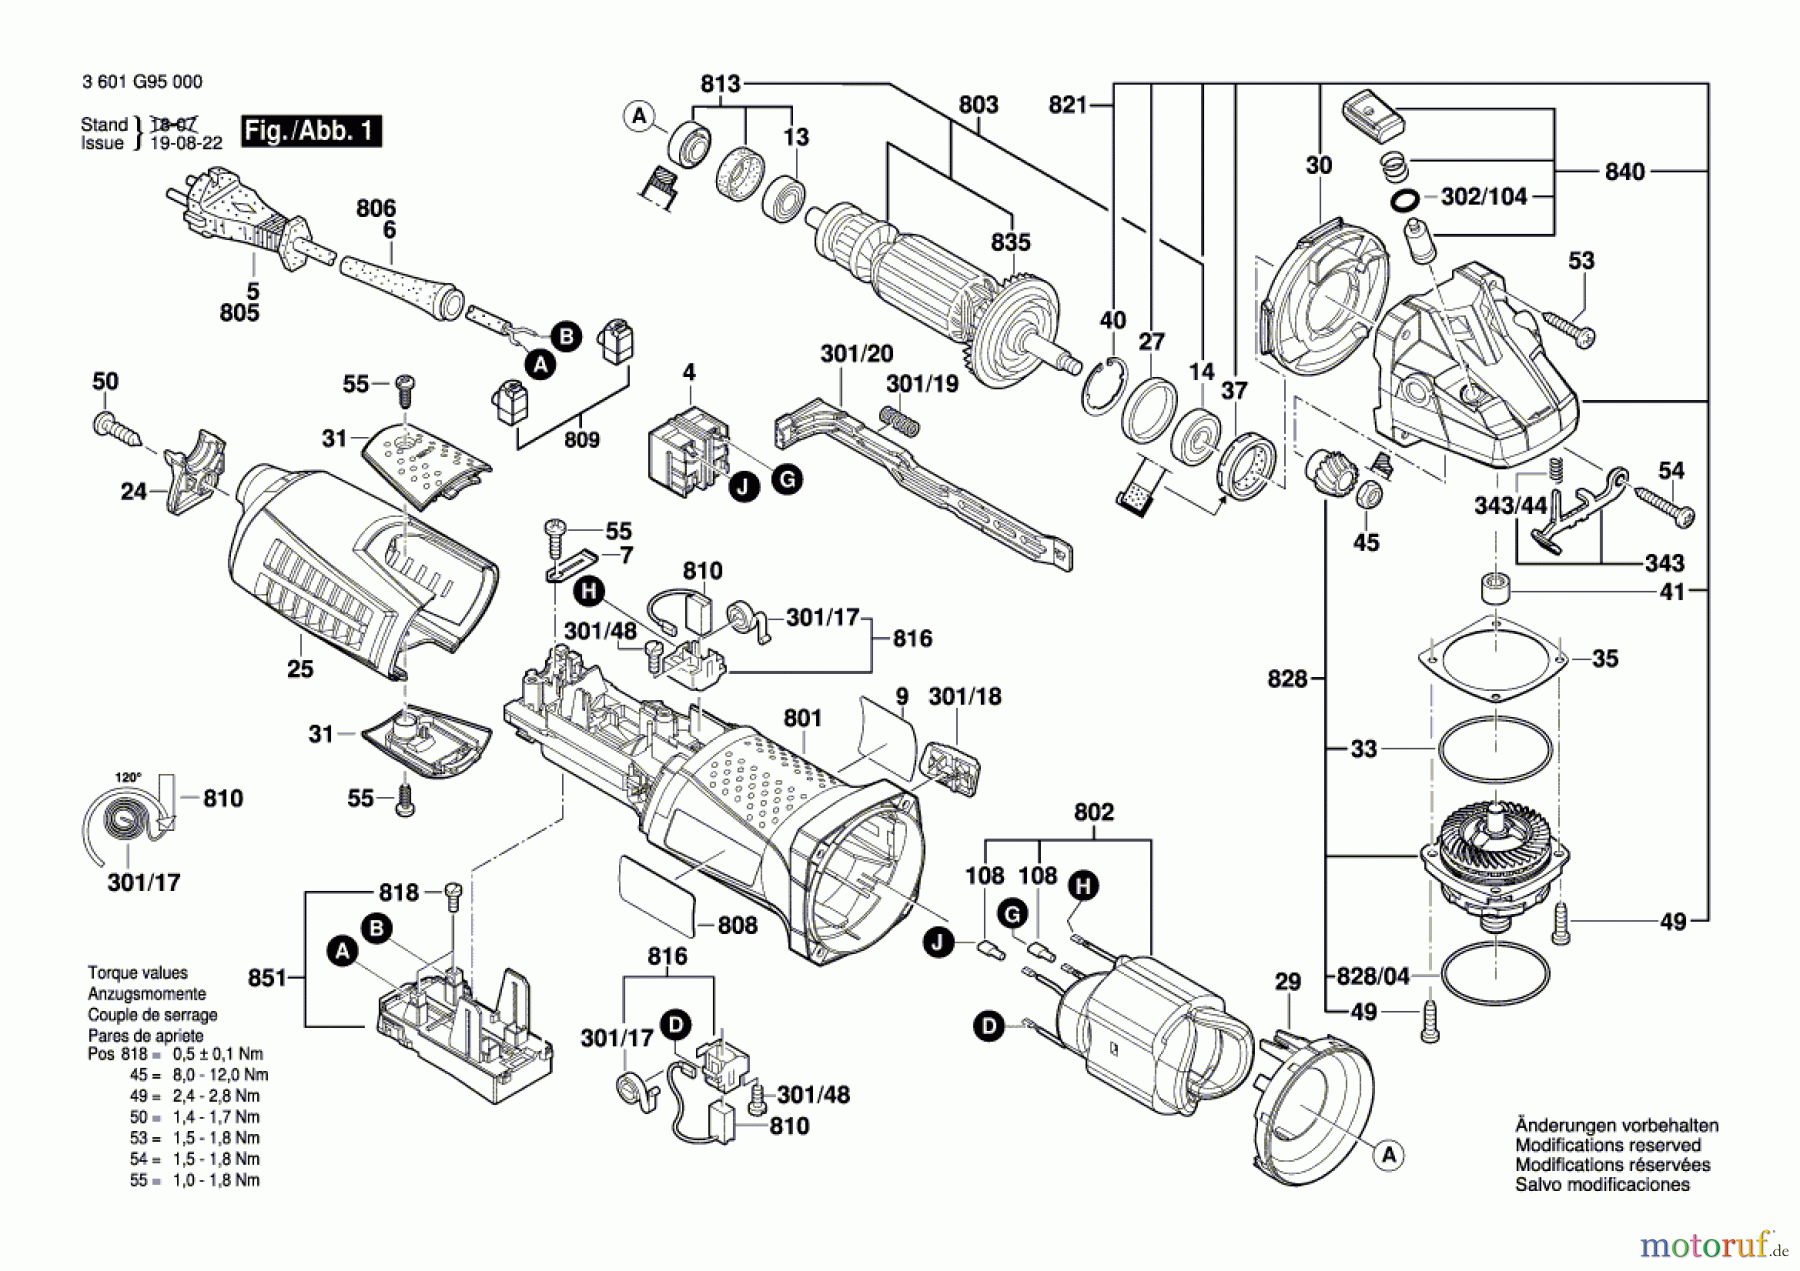  Bosch Werkzeug Winkelschleifer GWS 15-125 CI Seite 1